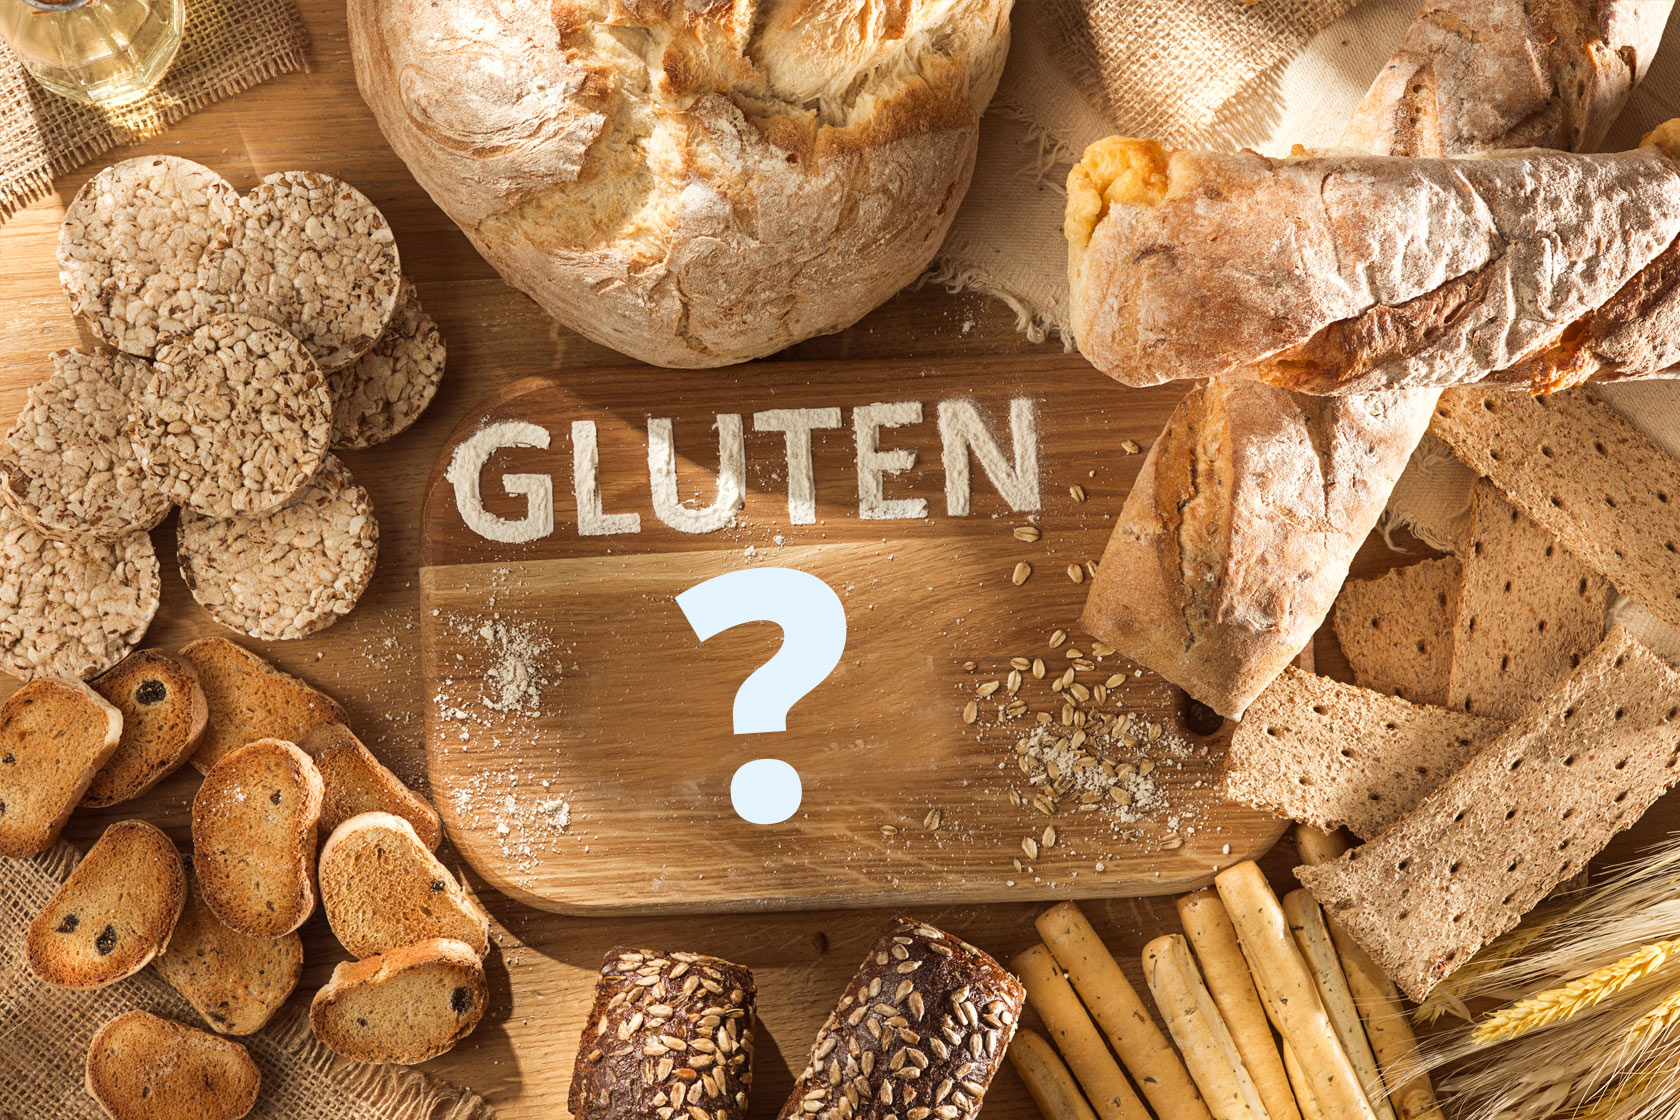 gluten-metz-pain-regime-nutrionniste-dieteticienne